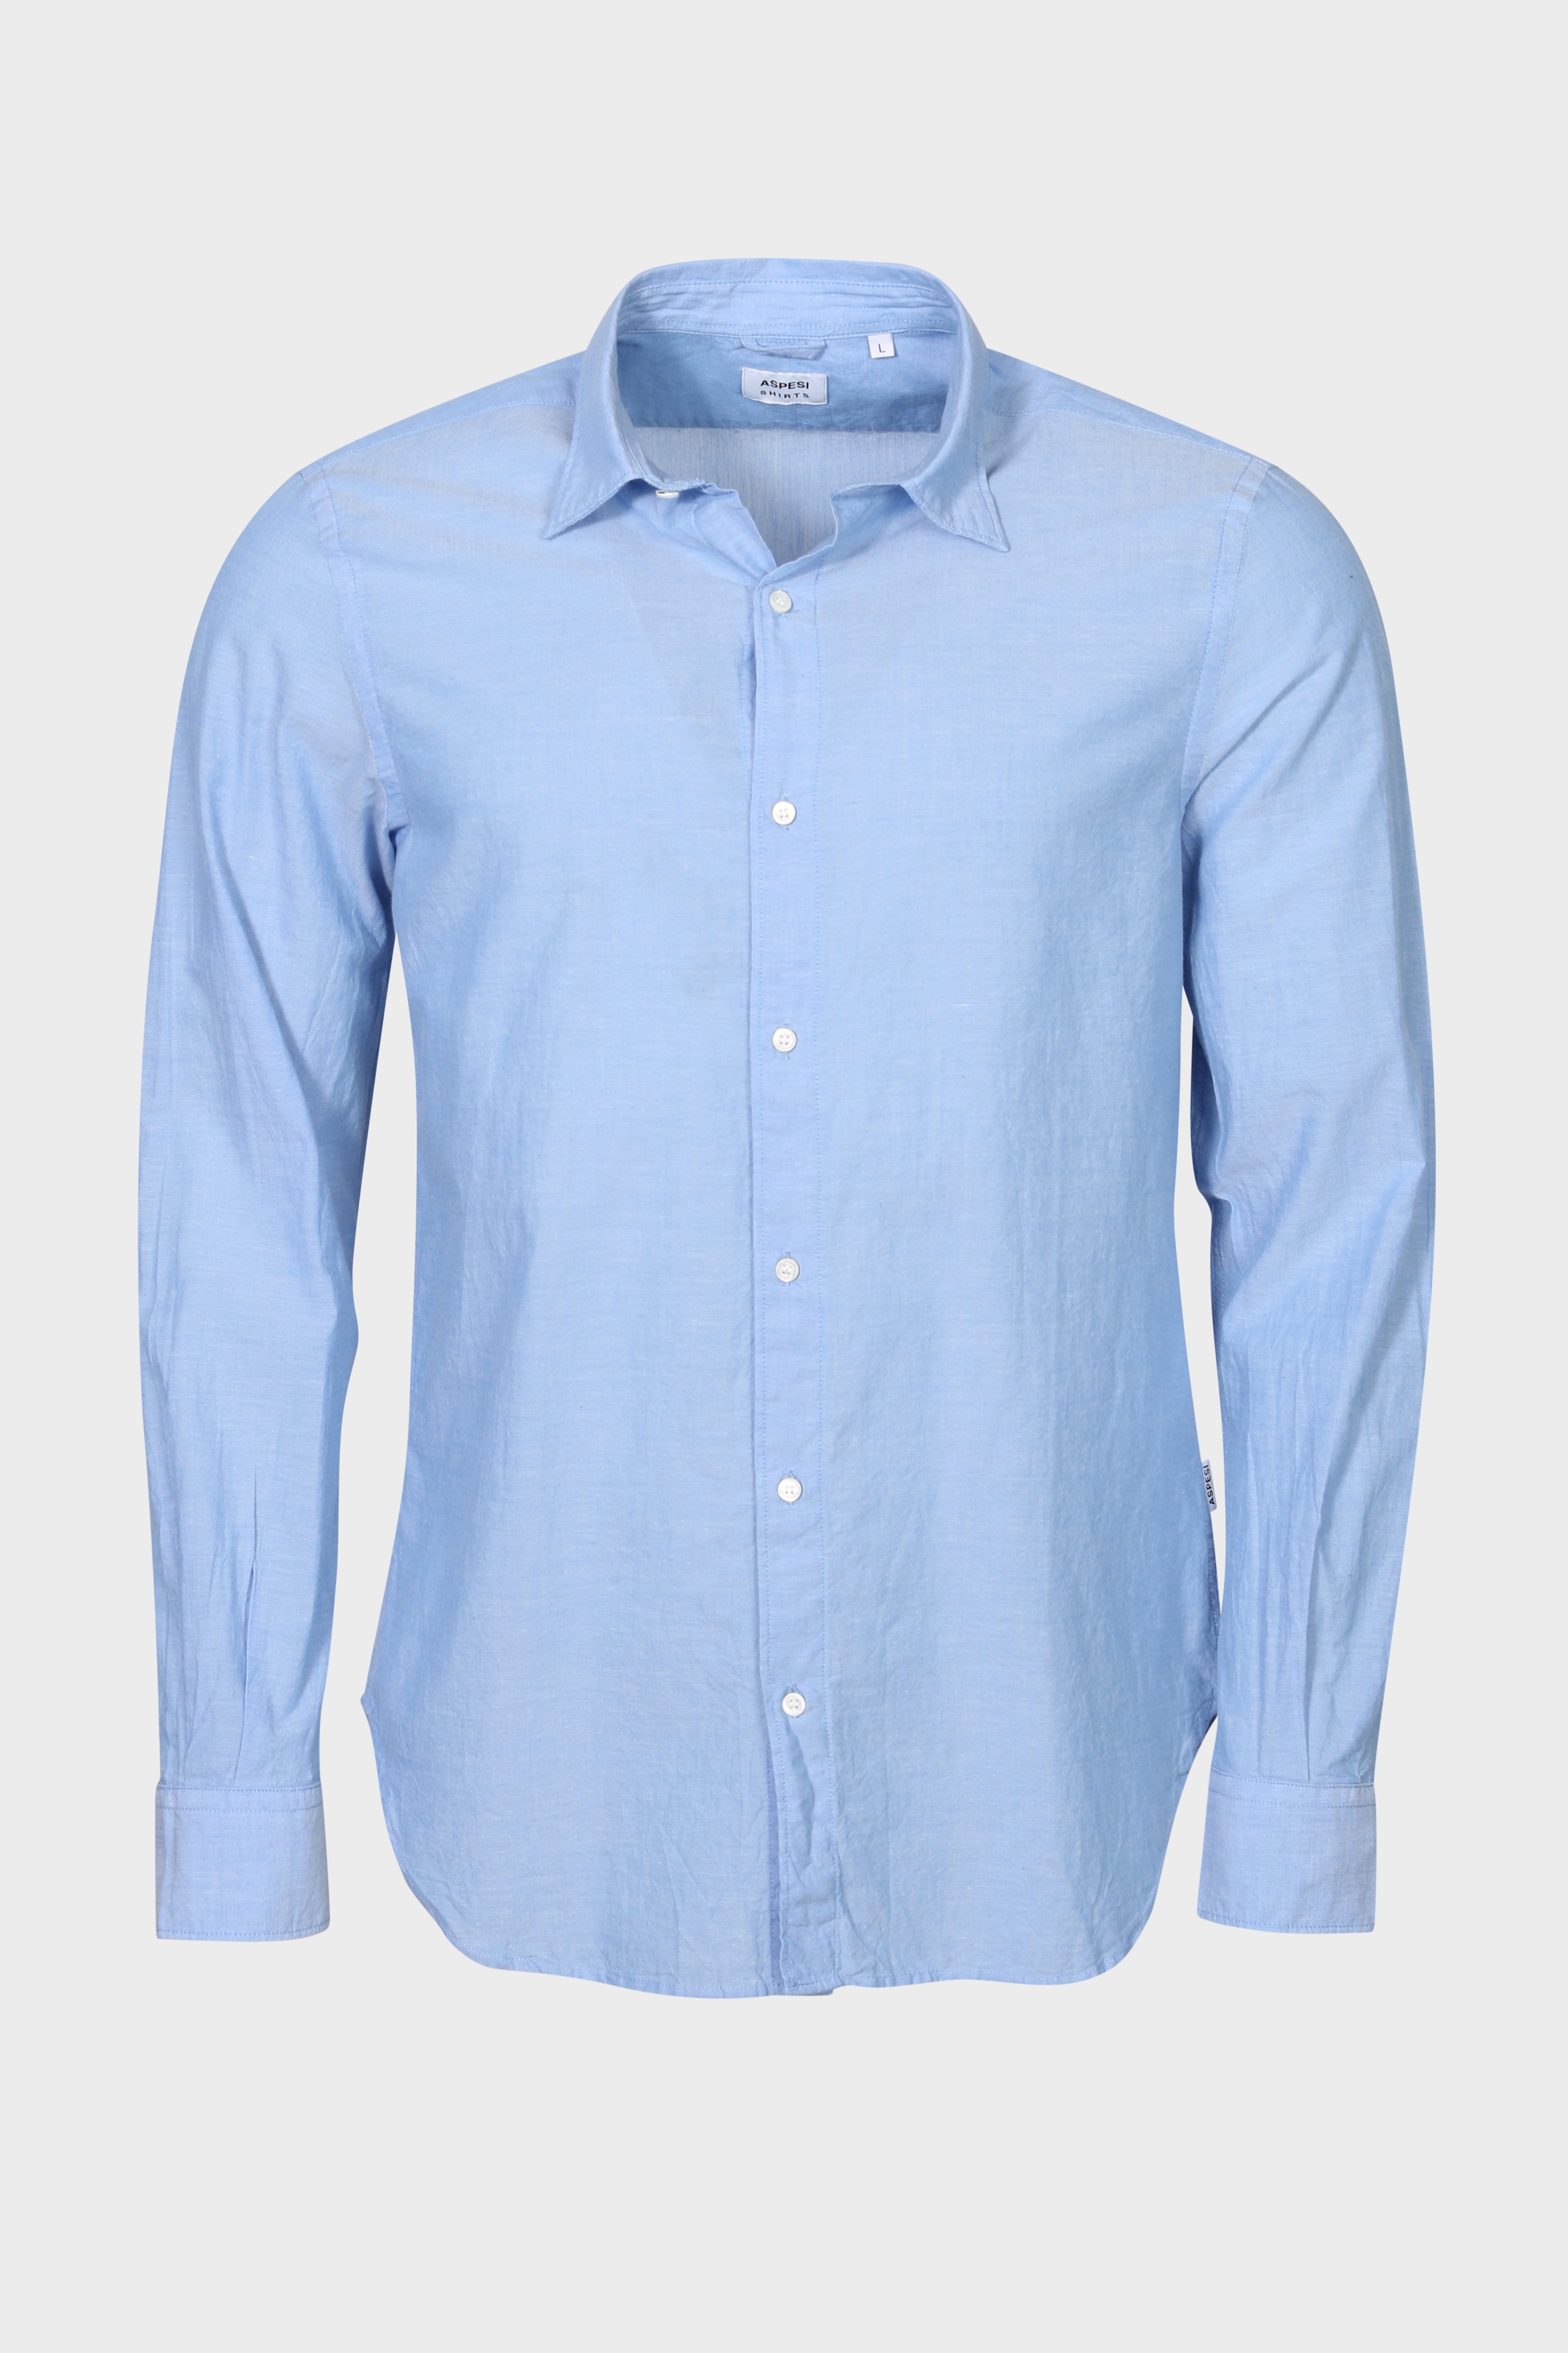 ASPESI Light Shirt in Light Blue